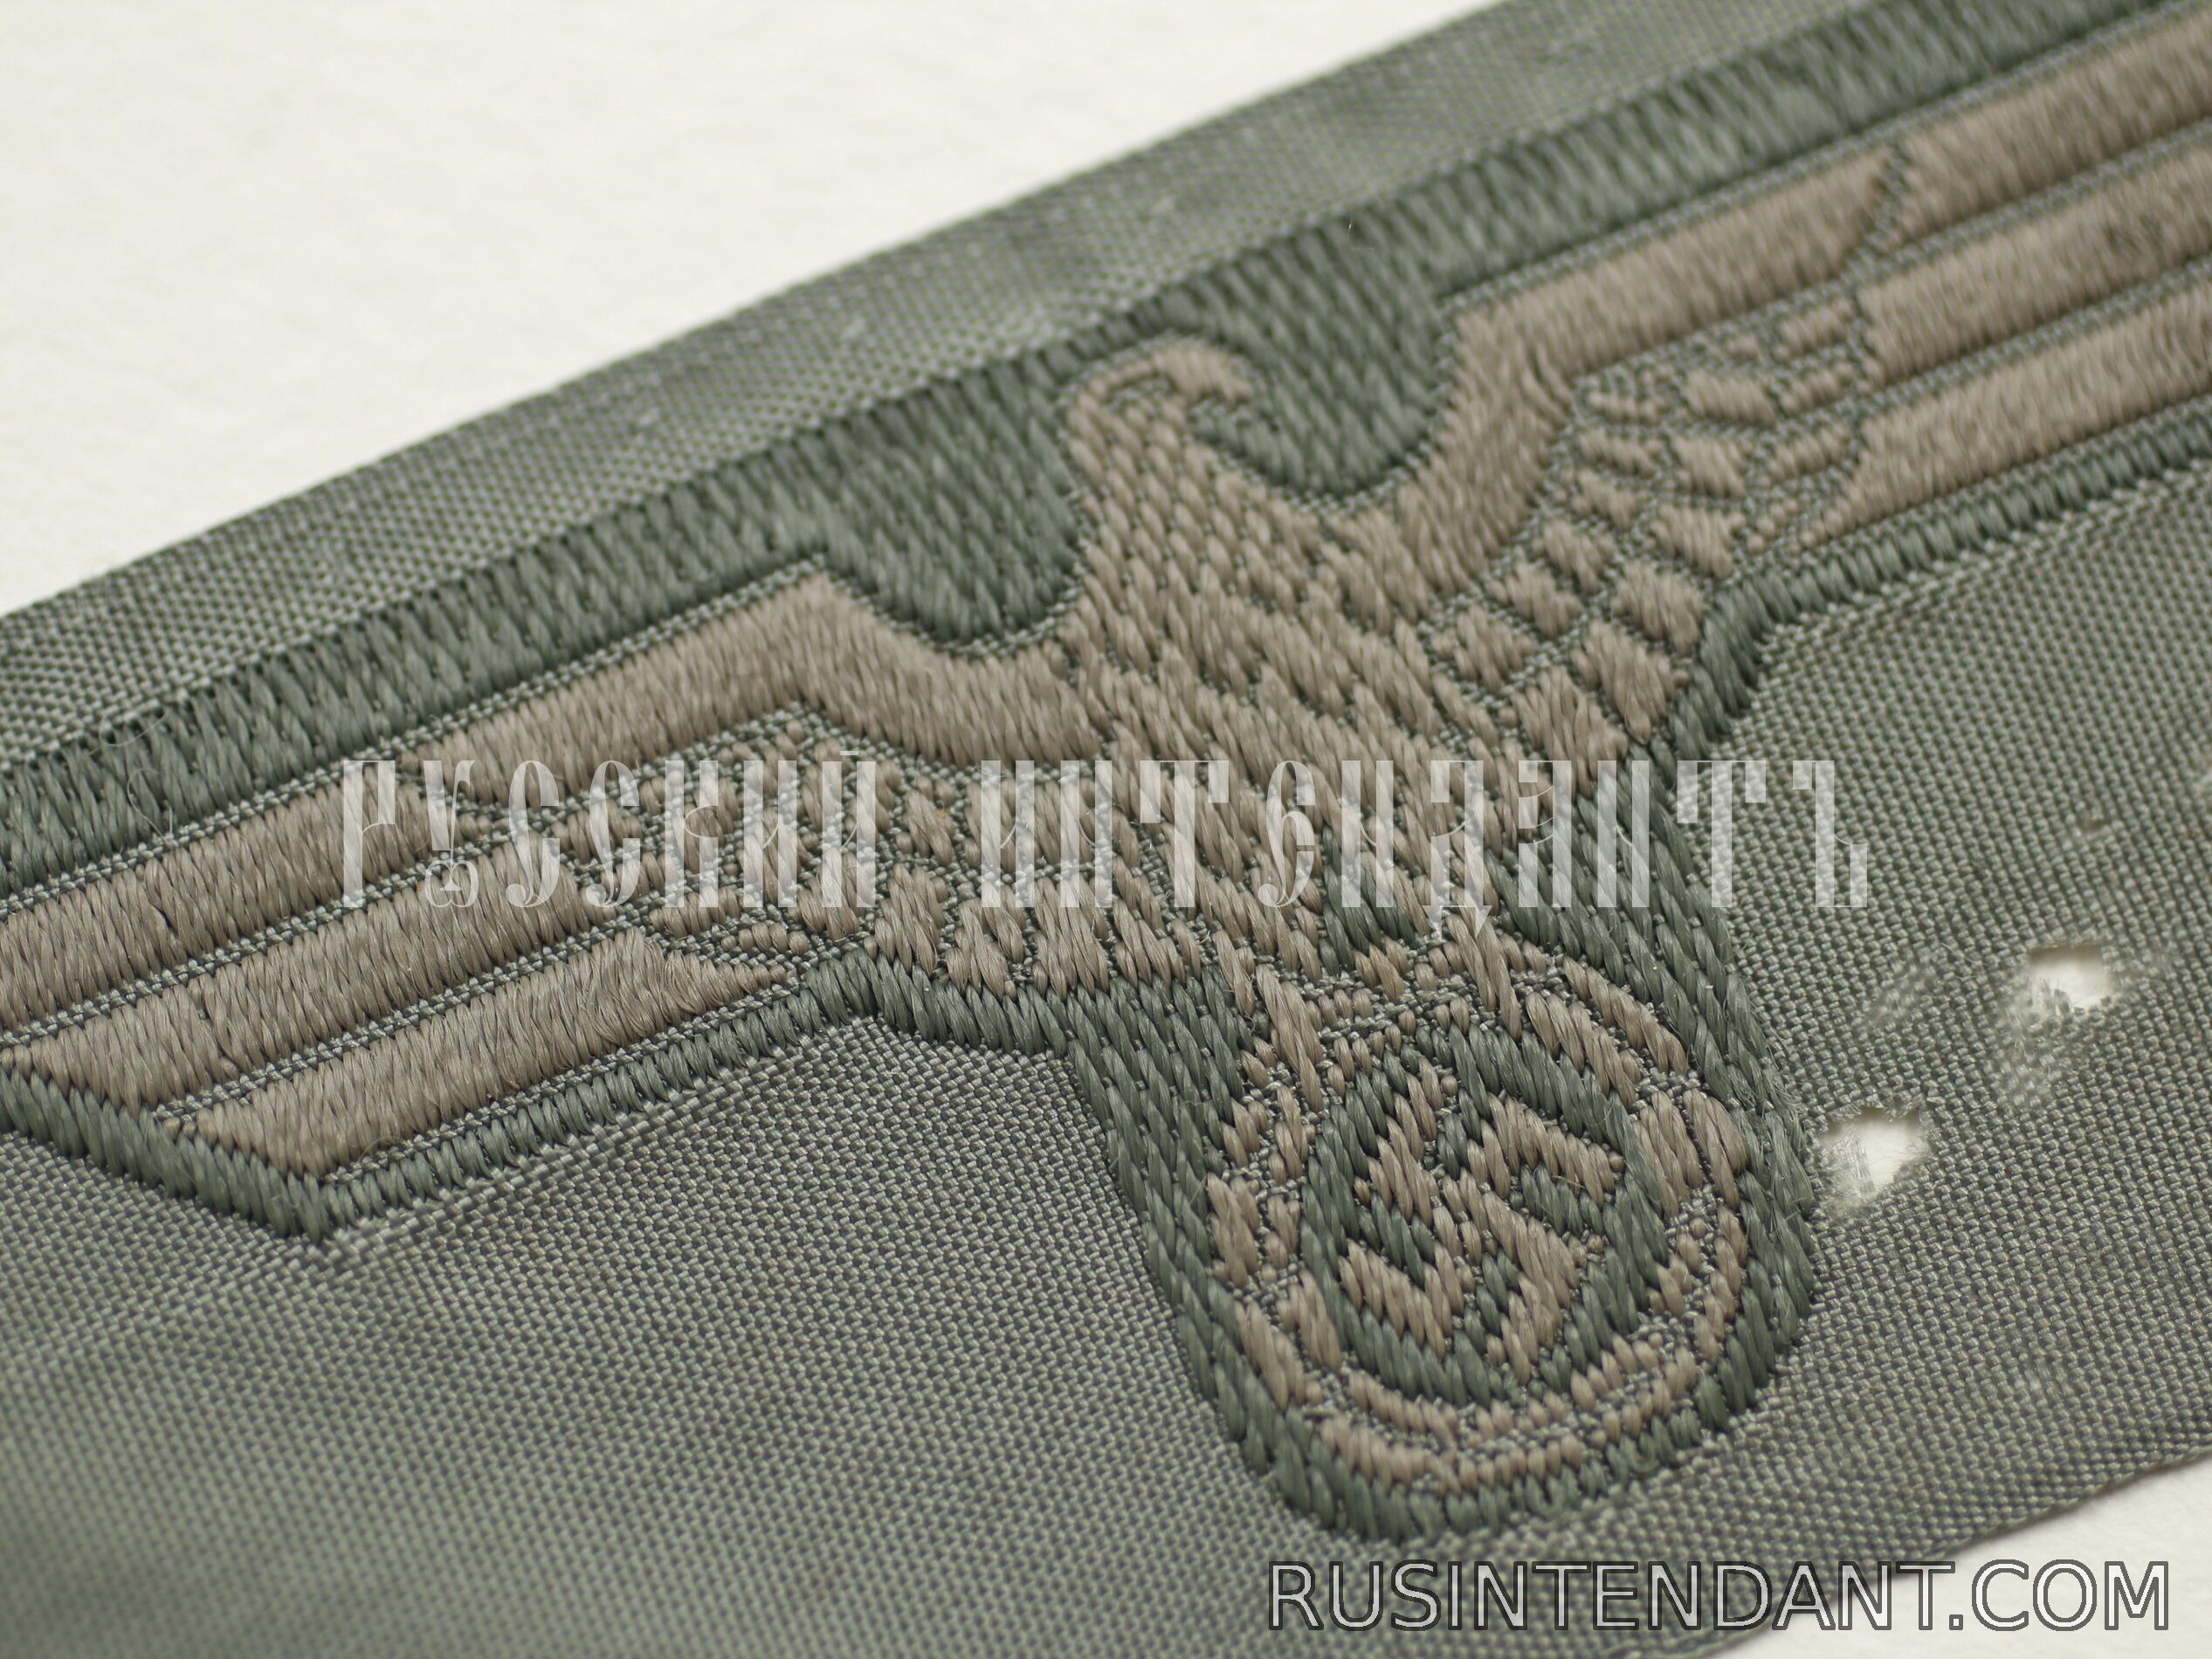 Фото 3: Эмблема на головные уборы Вермахта 